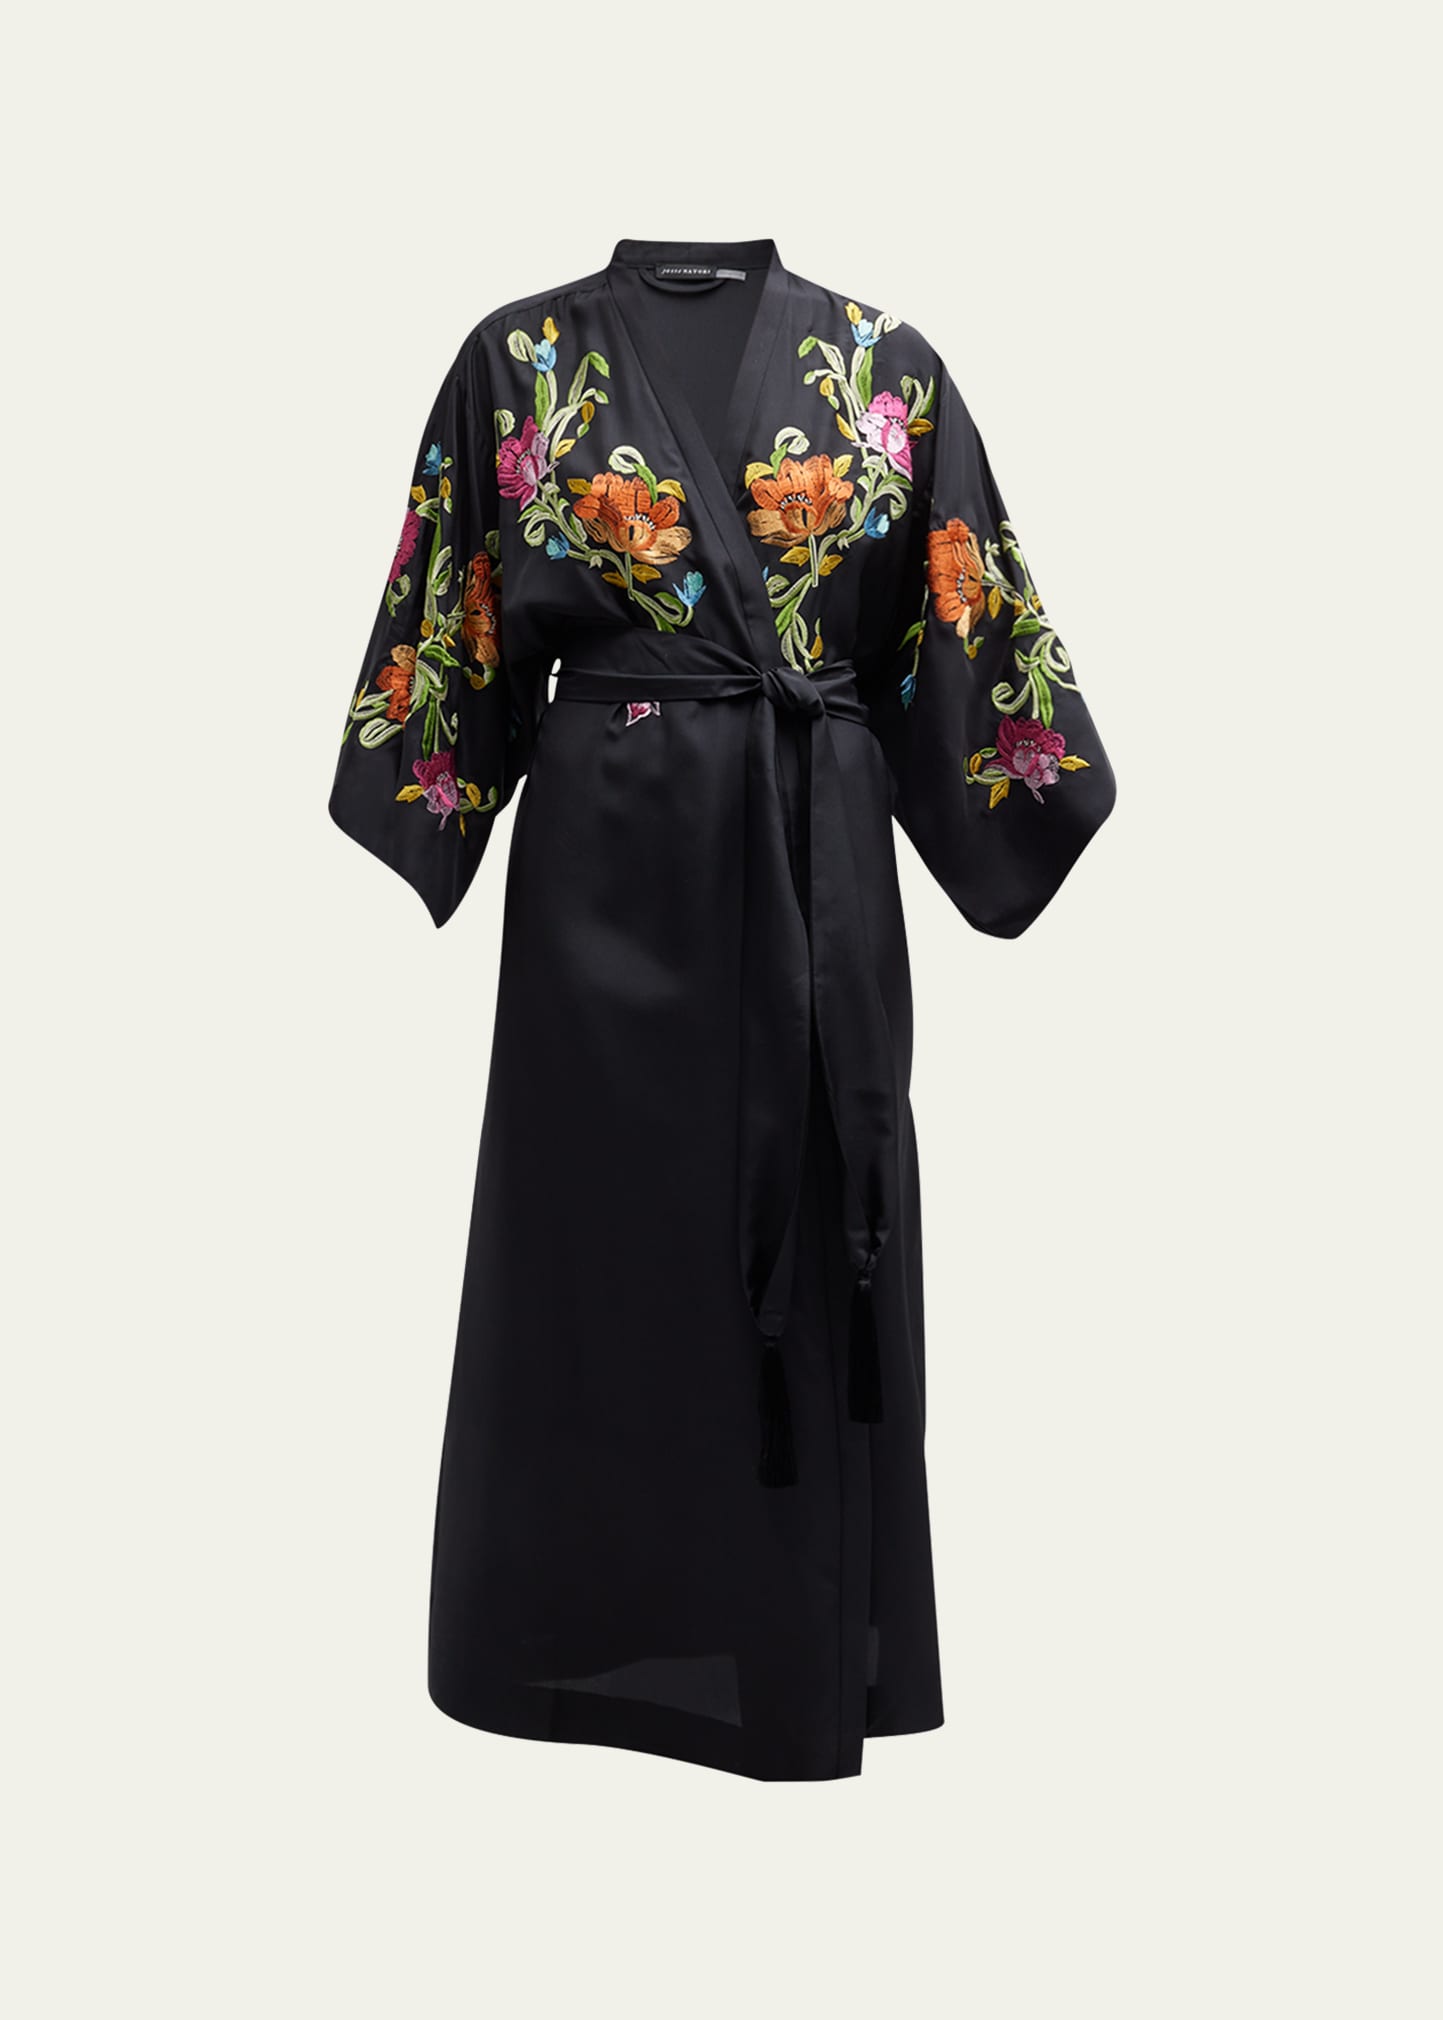 Josie Natori Shinjo Floral-Embroidered Kimono-Sleeve Robe